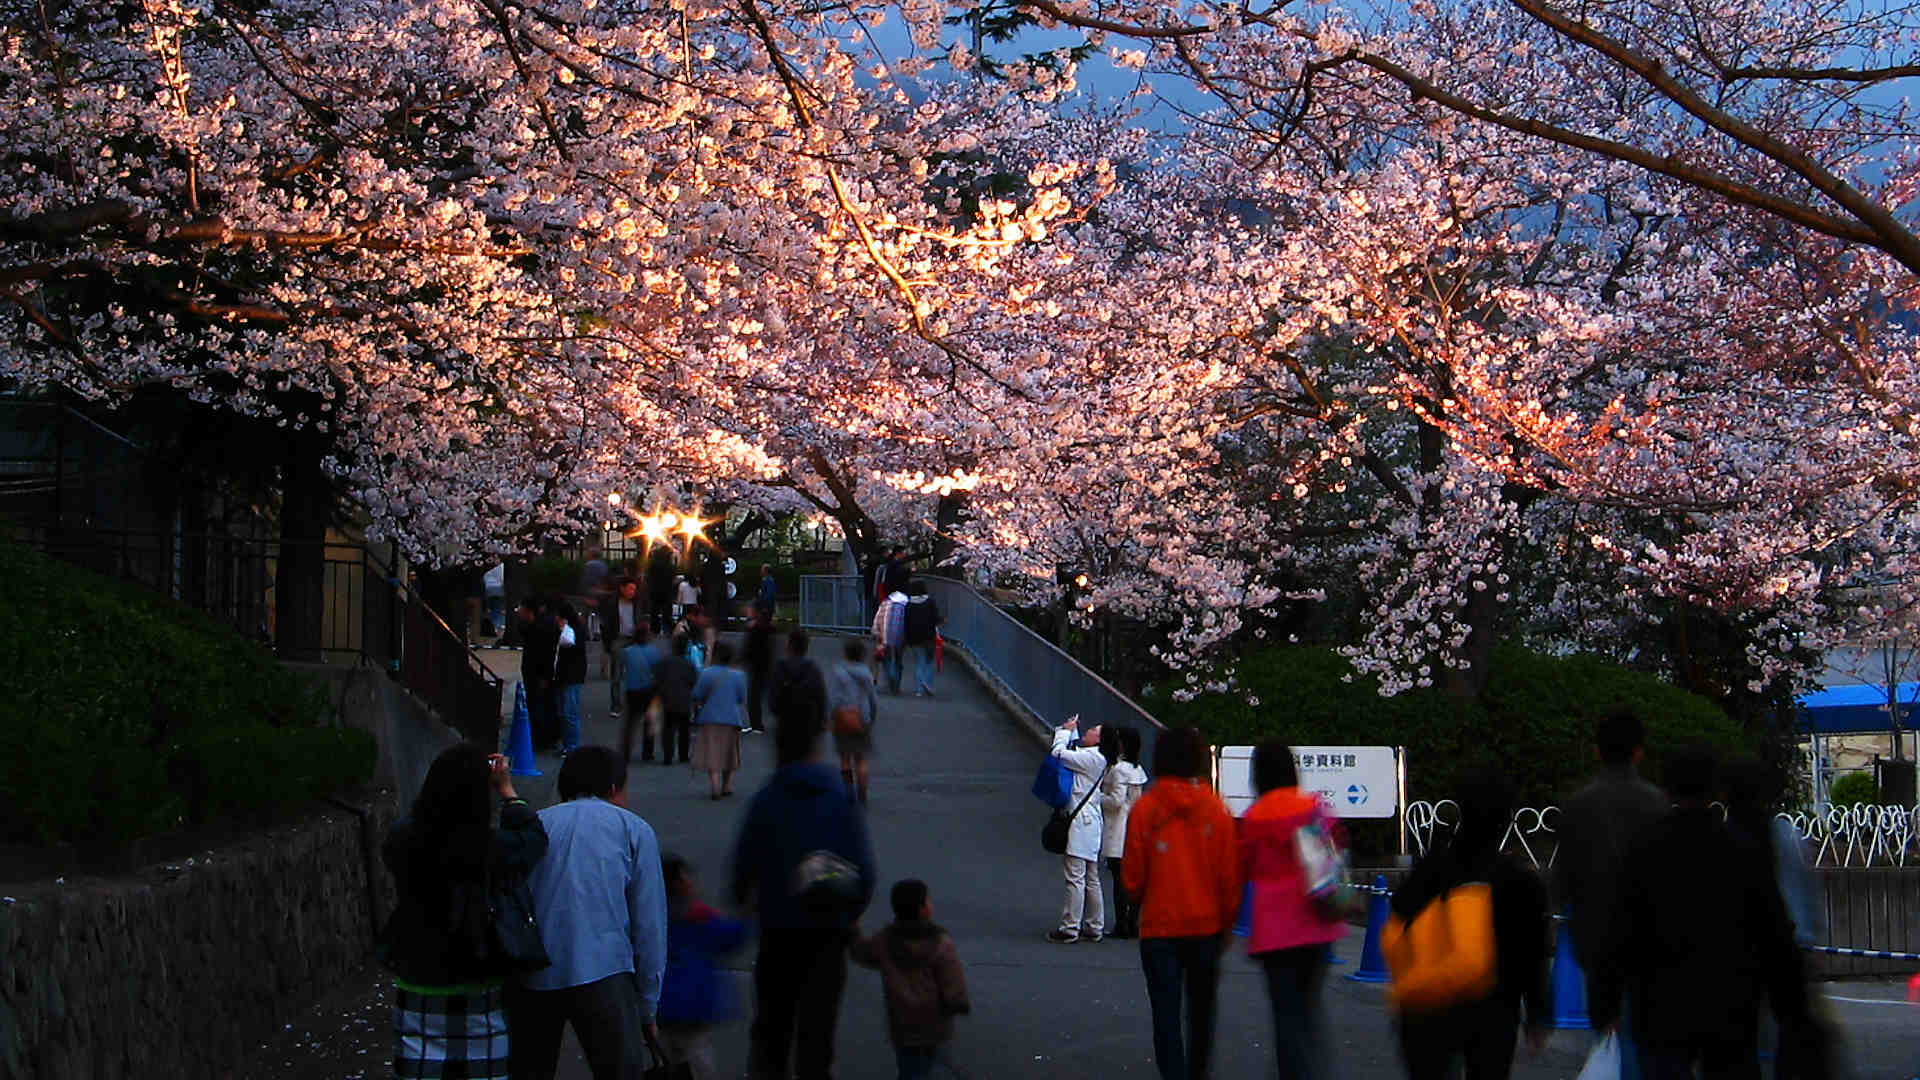 王子動物園夜桜通り抜け18 桜のライトアップは入園無料